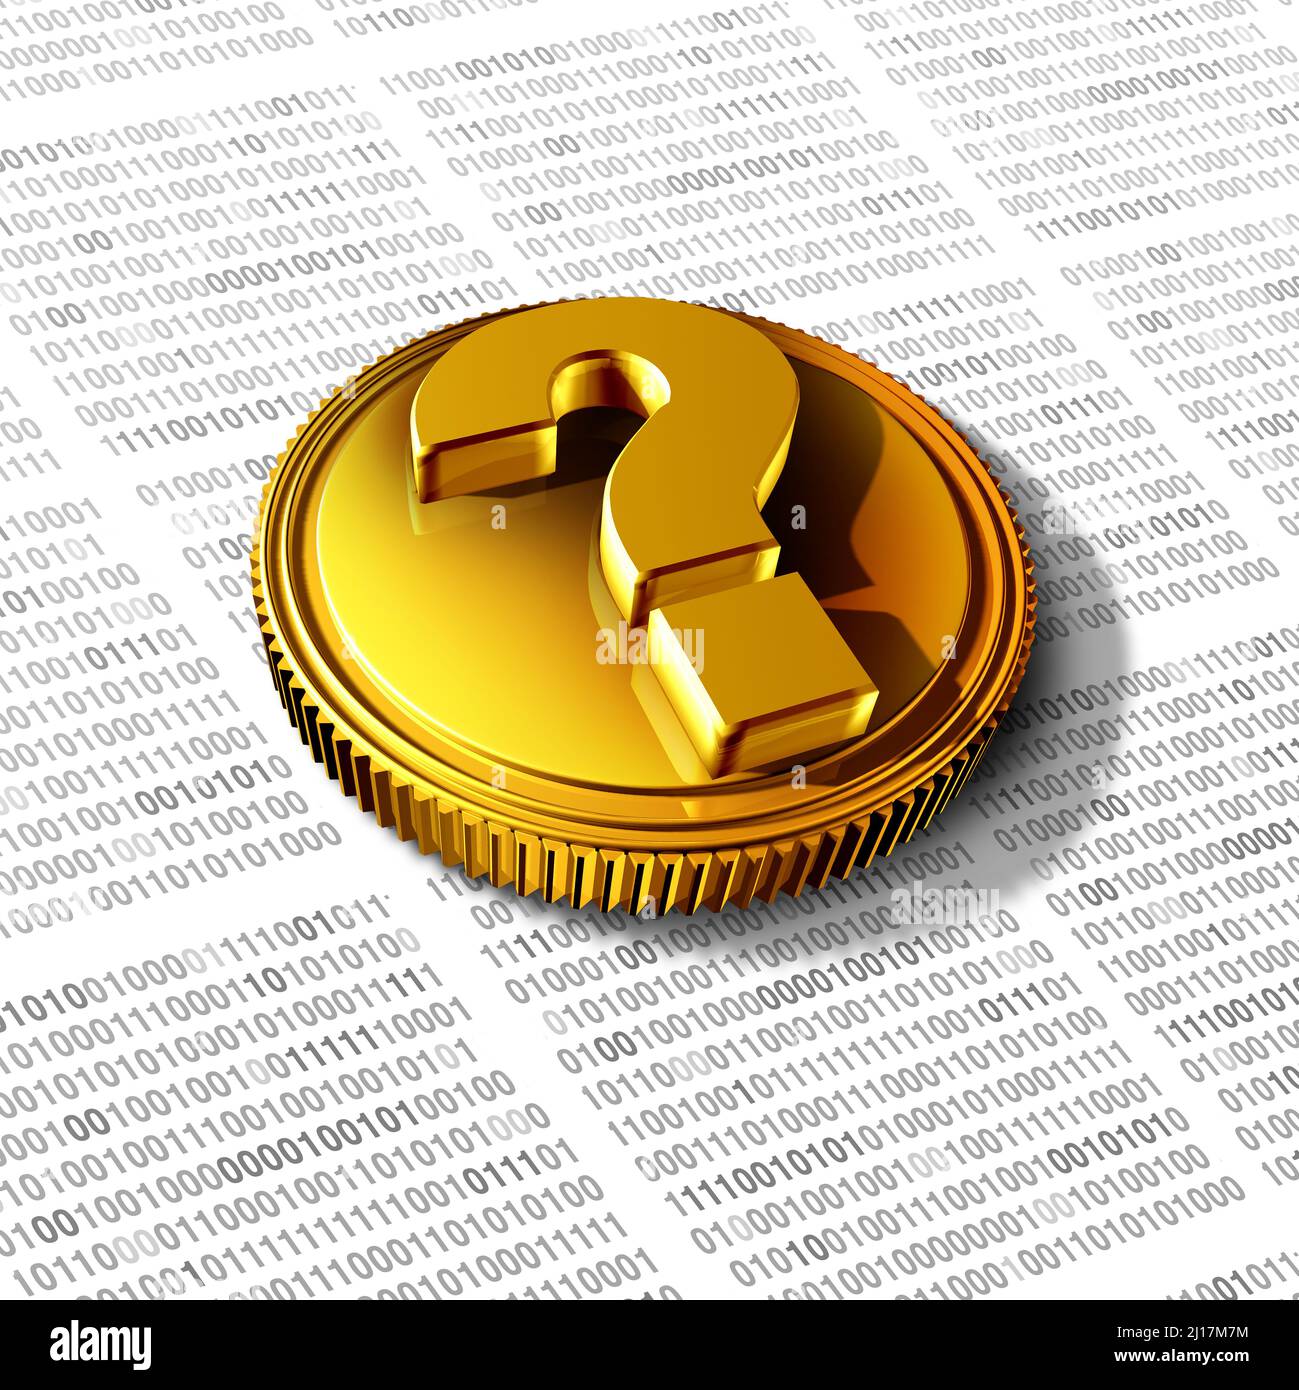 Fragen zu Kryptowährung und Krypto-Währungen und Investitionsunsicherheit als virtuelle Blockchain-Geldanlage riskieren mit einer Goldmünze. Stockfoto